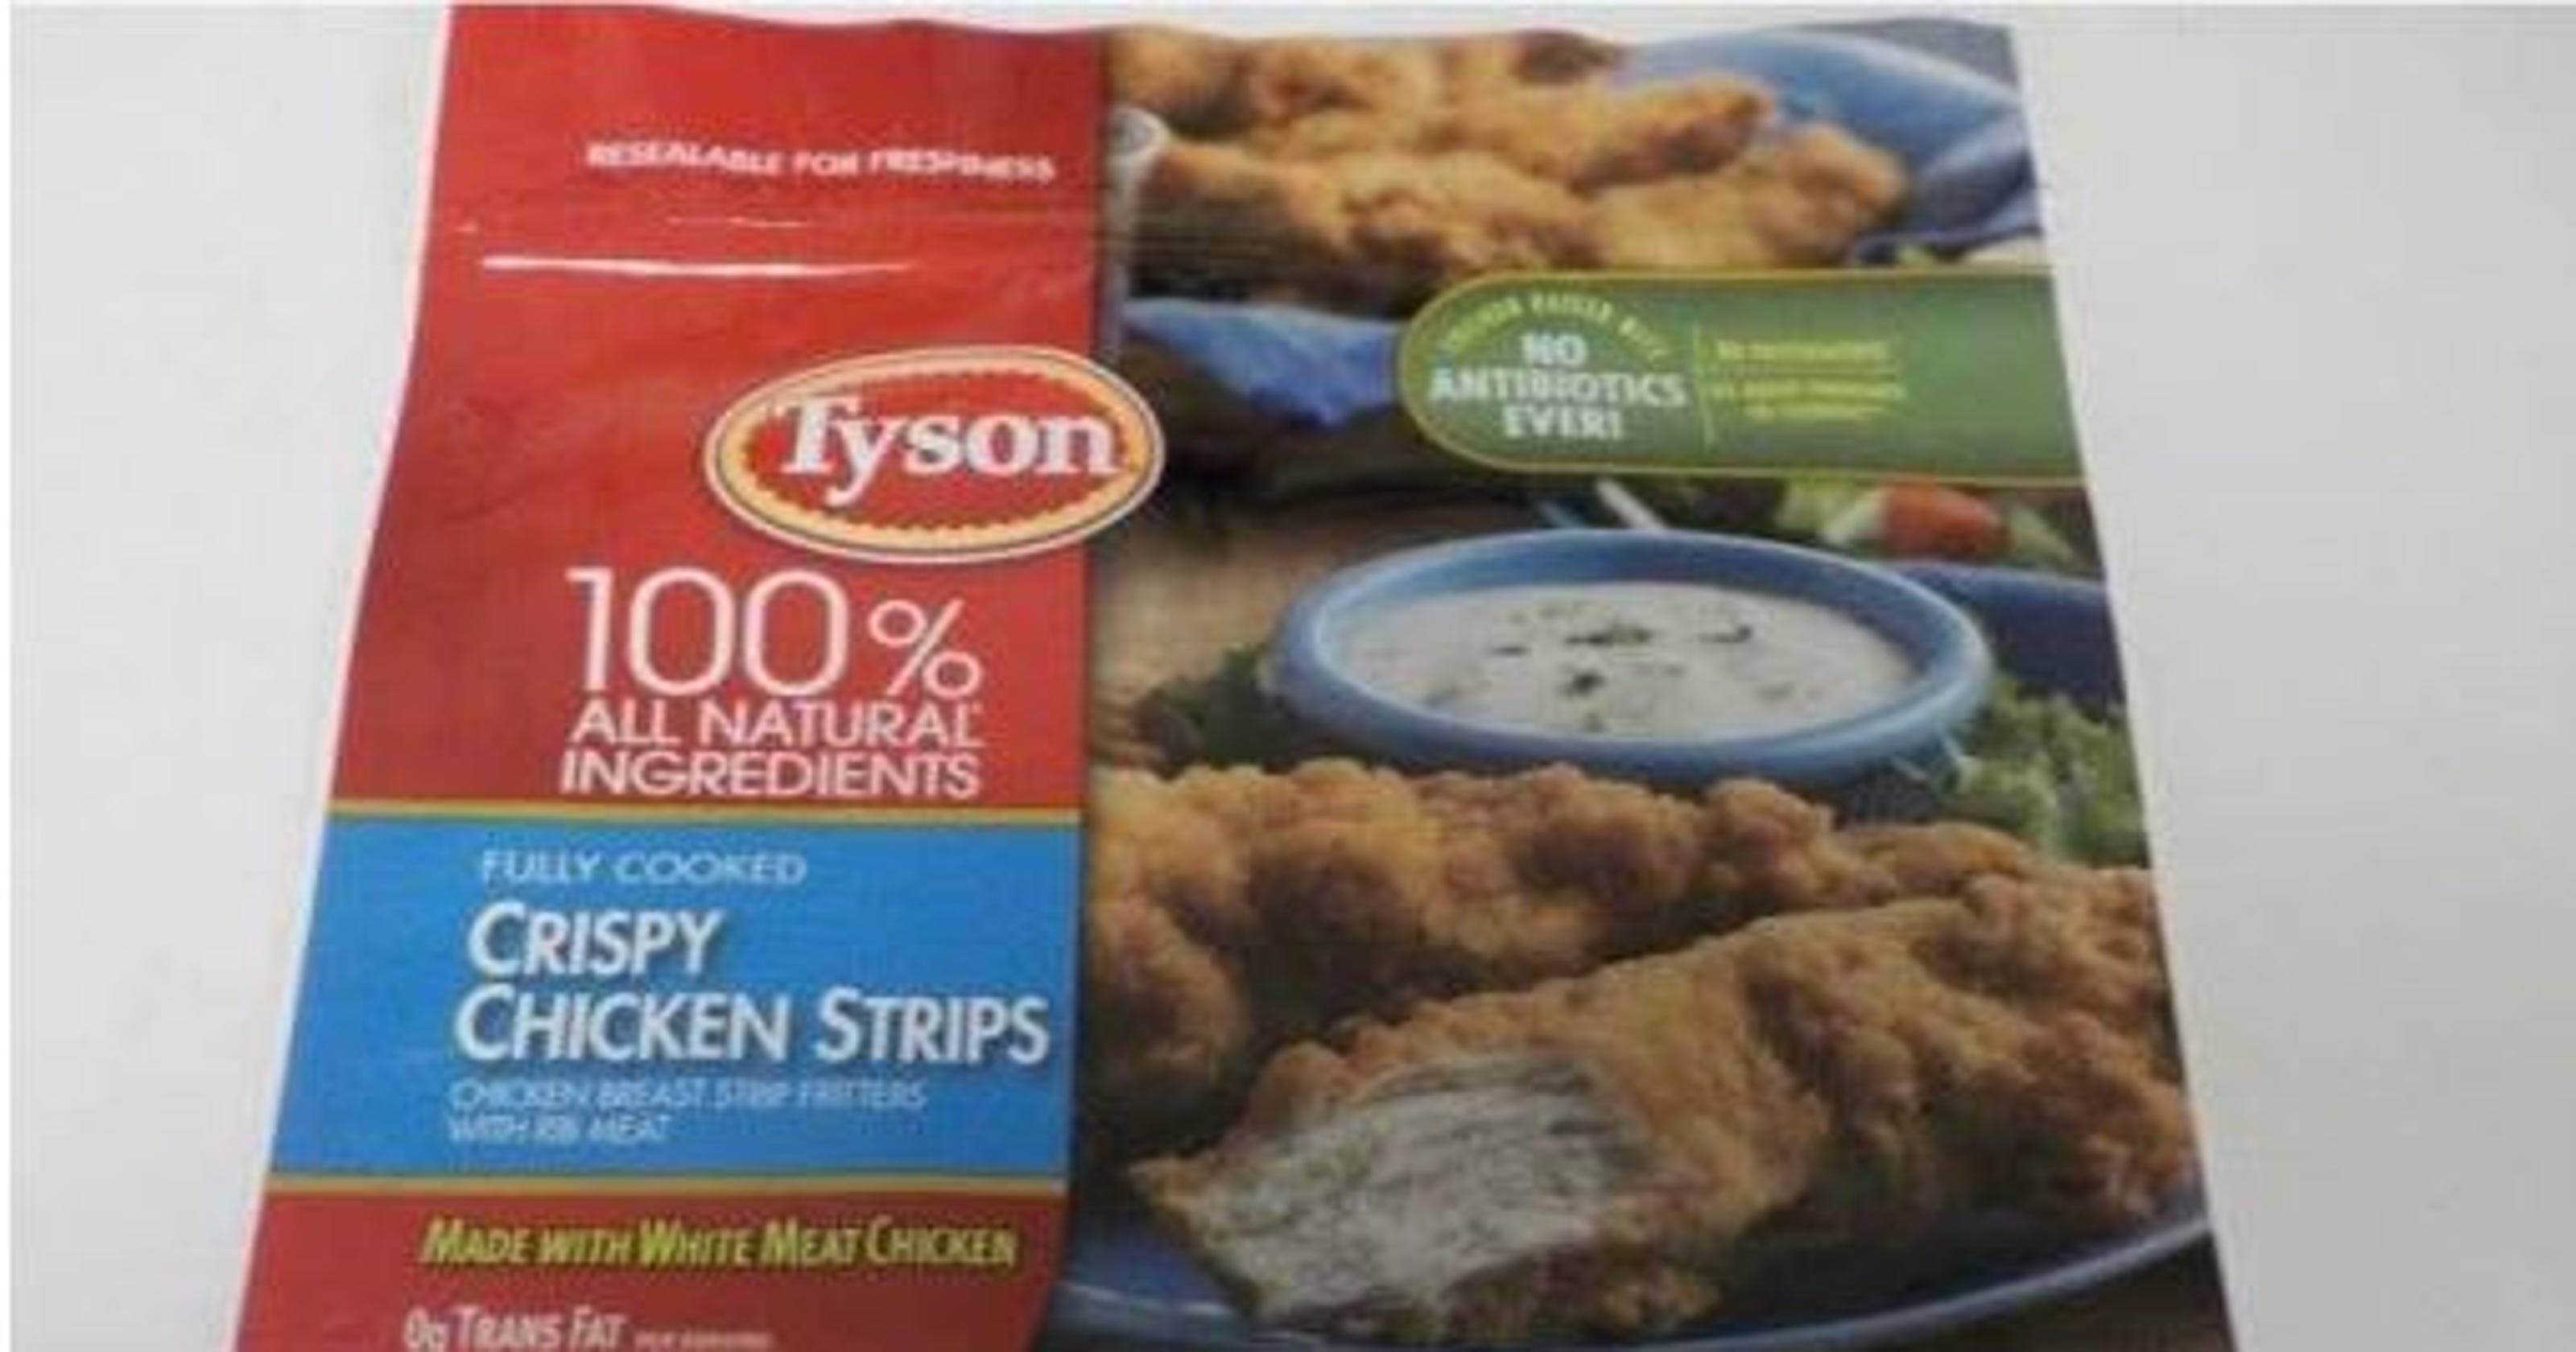 Tyson chicken recall 2019 Chicken strips join nuggets recalled